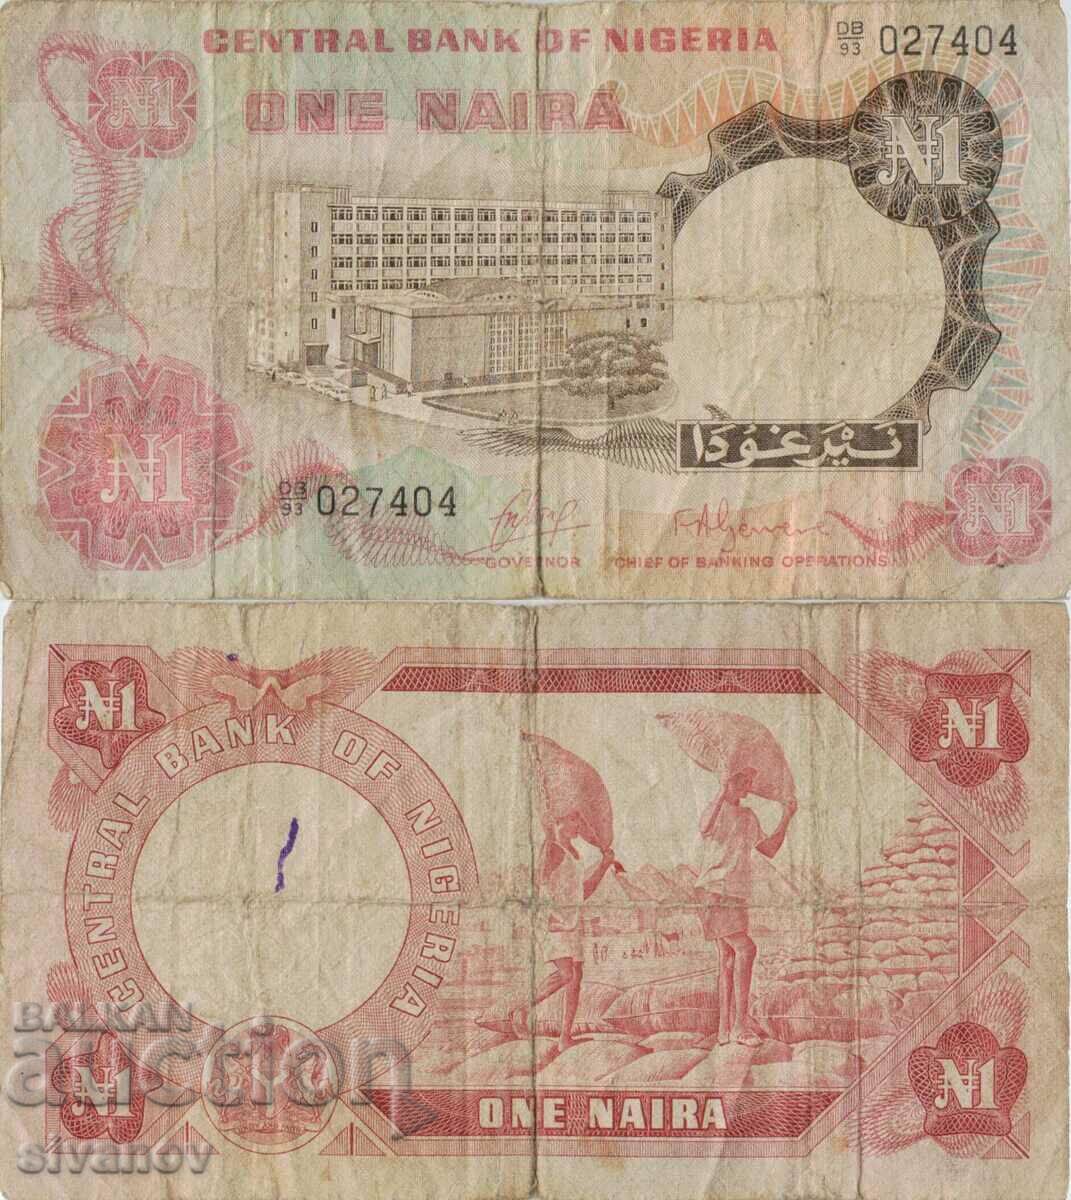 Nigeria 1 Naira 1973 Bancnota #5137